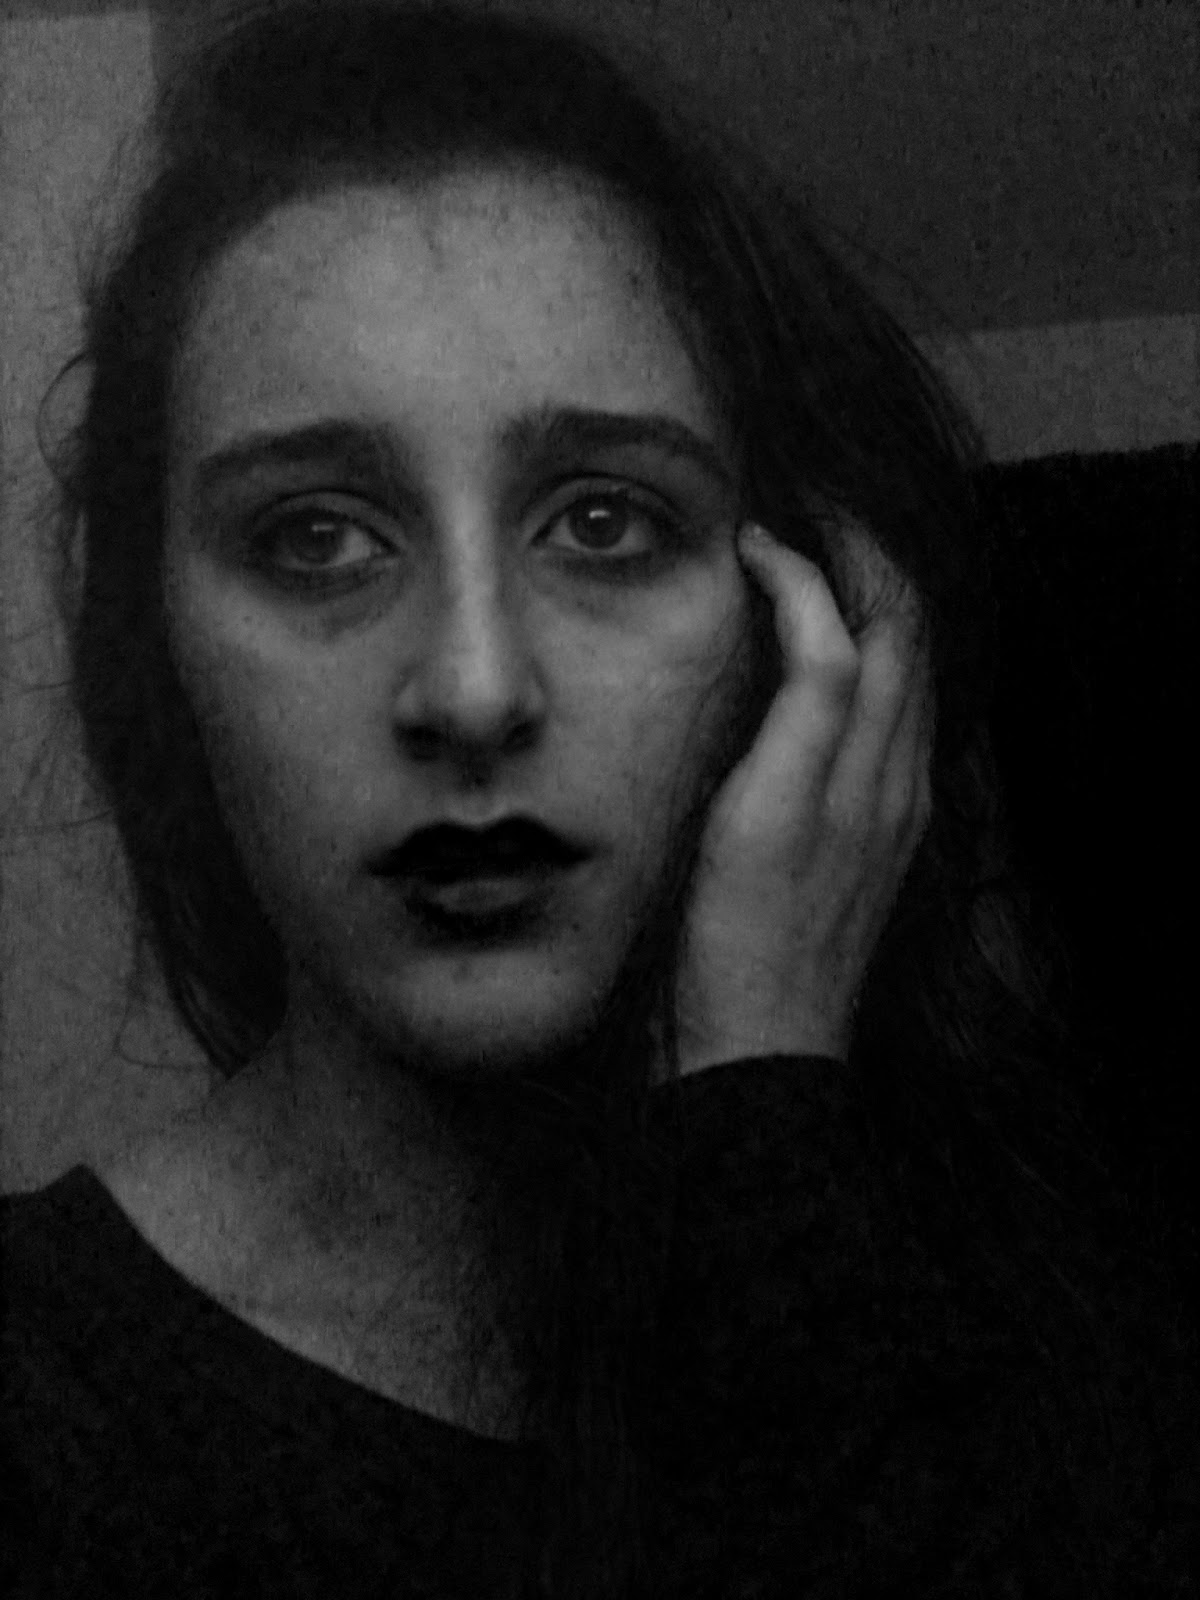 Odd future : Self portrait- Black and white